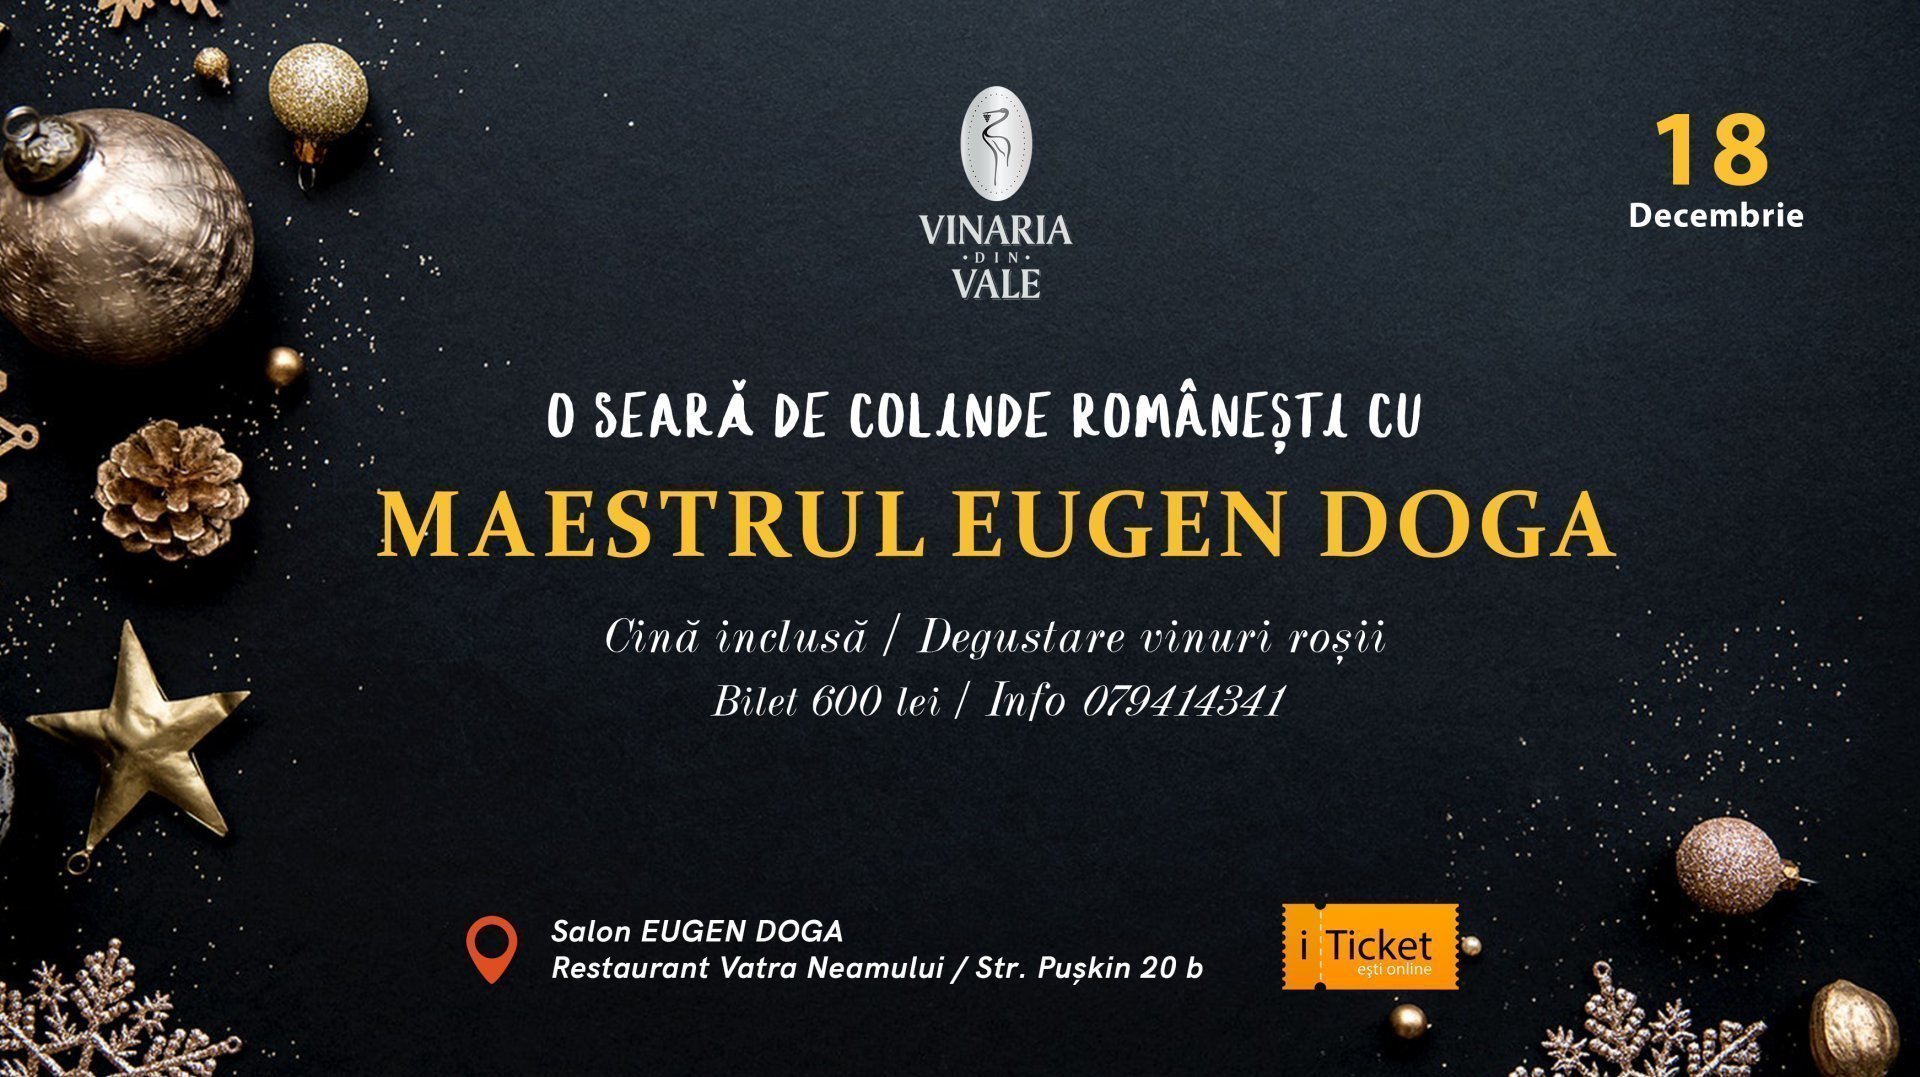 O seara de colinde romanesti cu Maestrul Eugen Doga